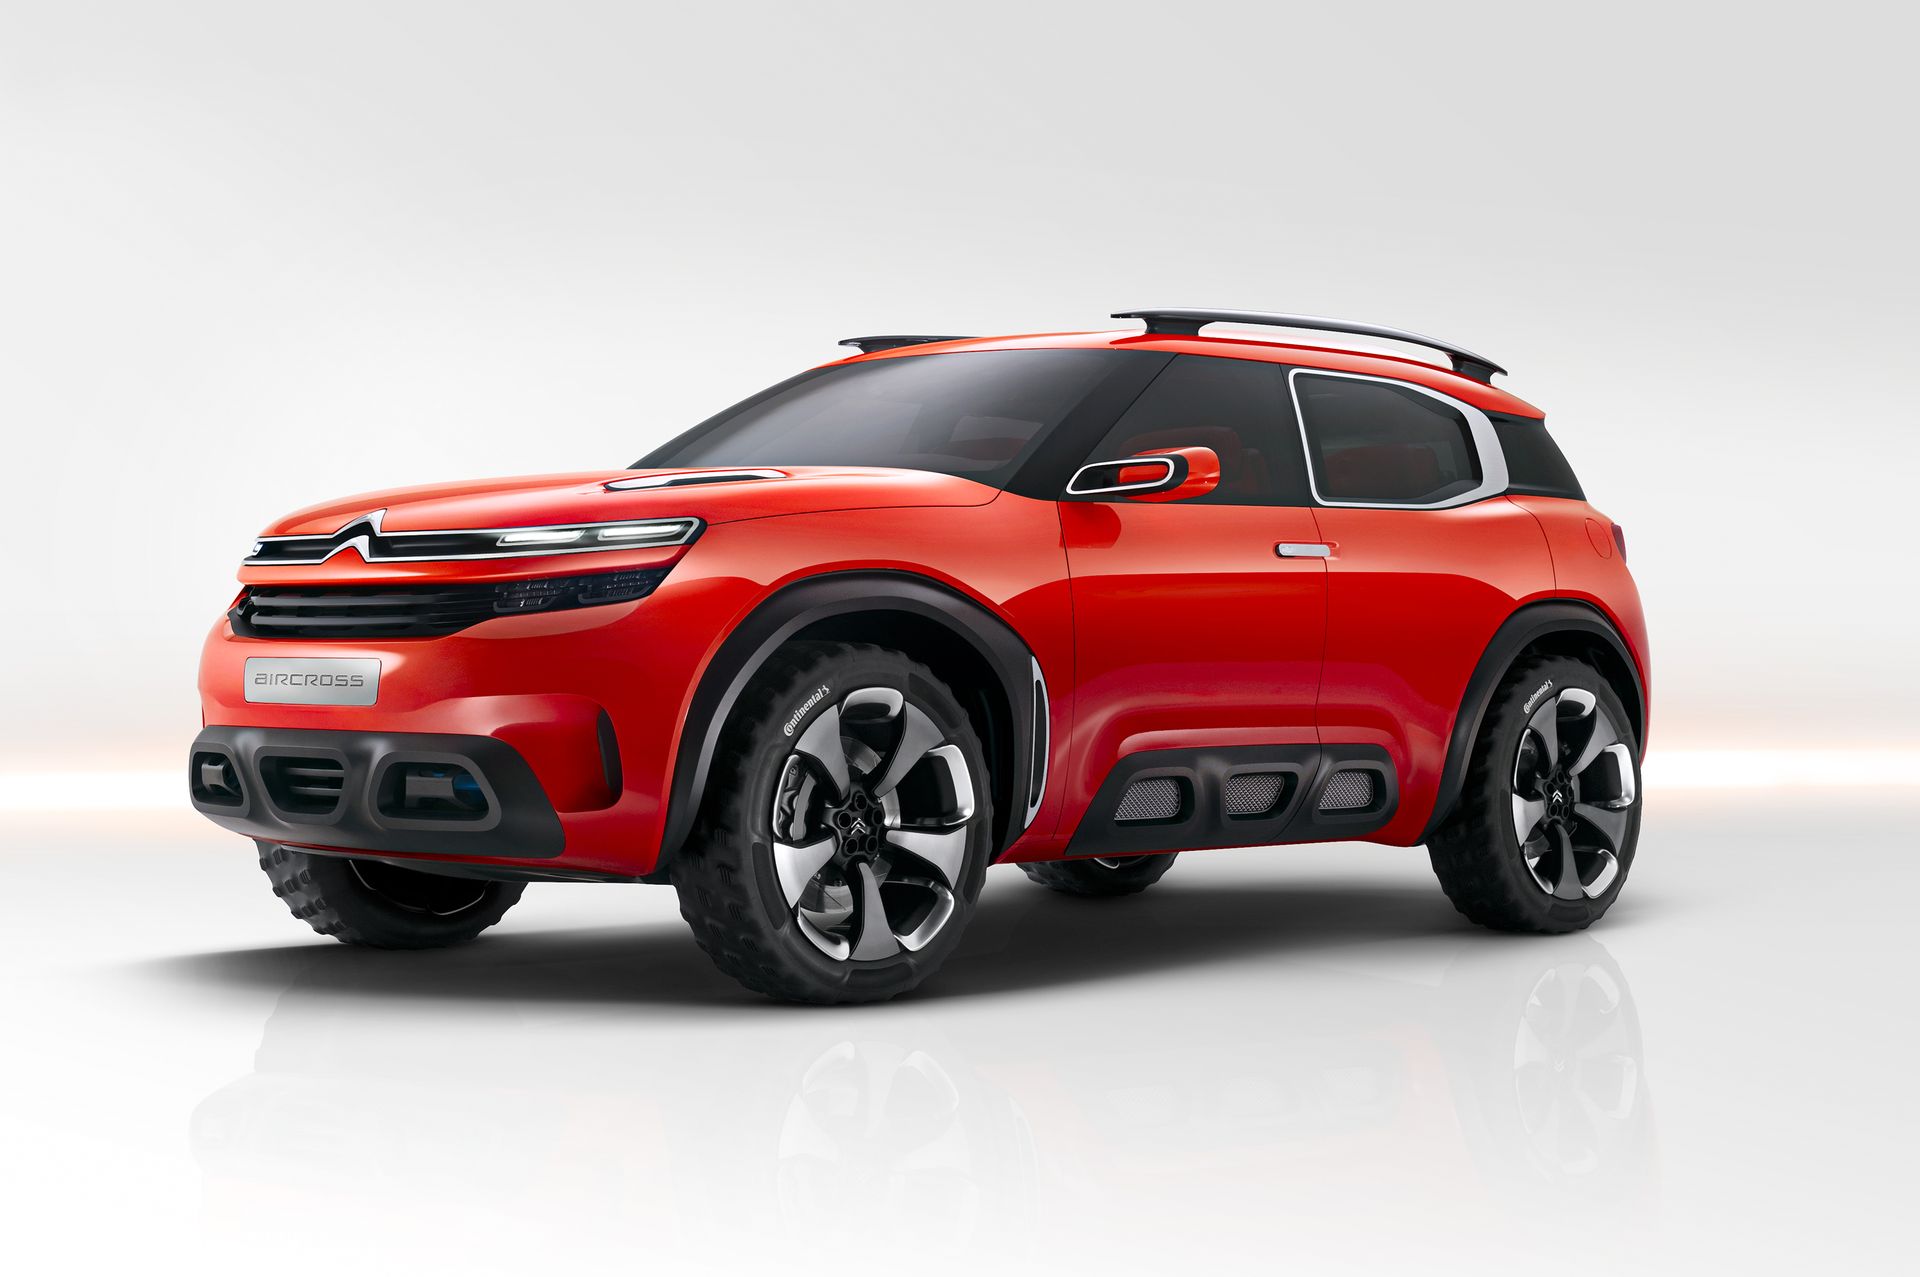 Citroën Aircross Concept 2015